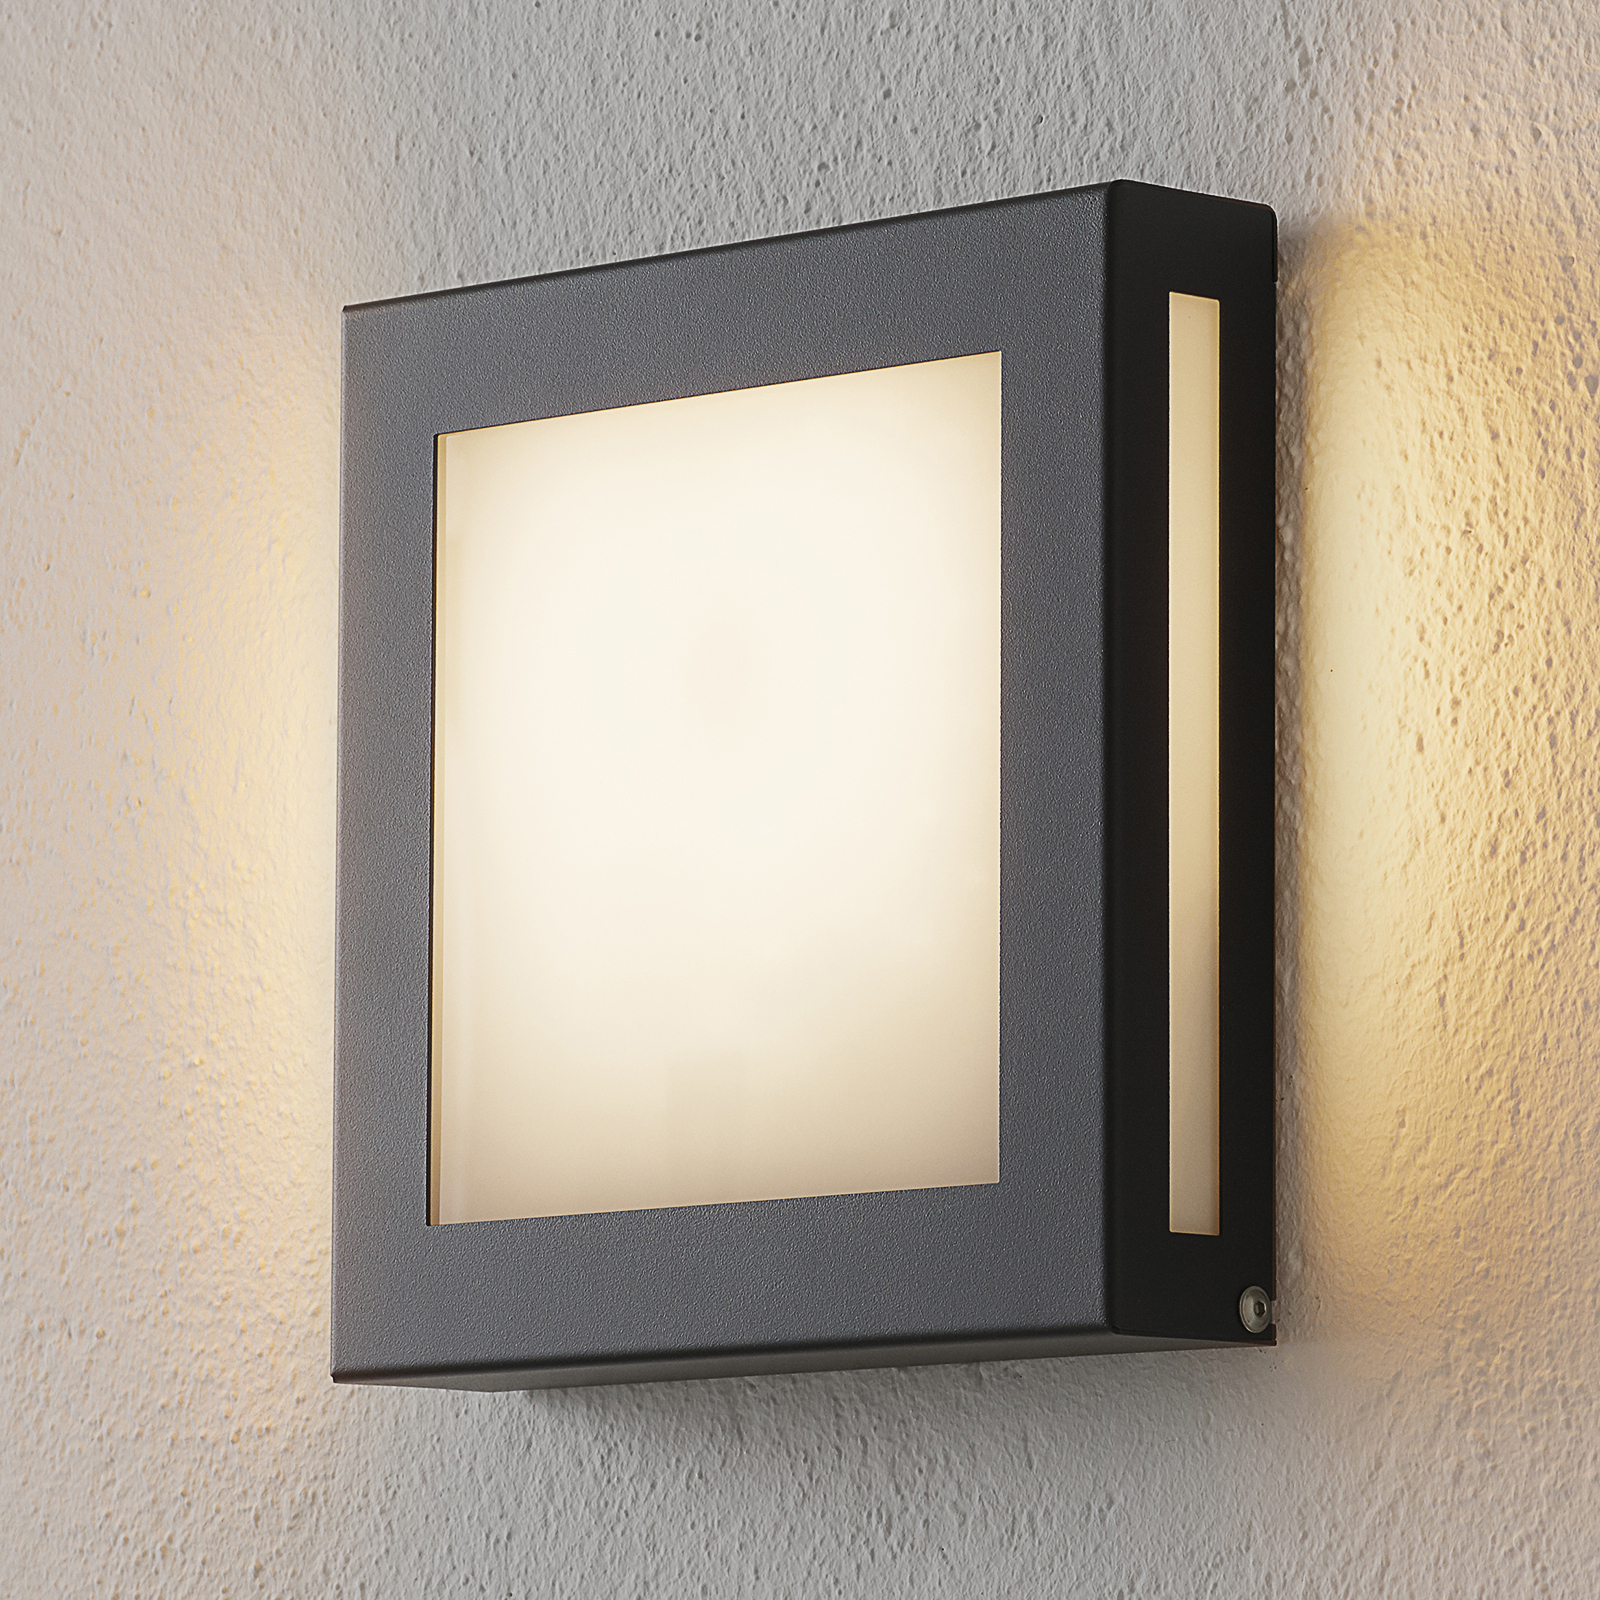 Ik geloof Richtlijnen Bijdragen Sensor-LED buitenlamp Aqua Legendo Mini, antraciet | Lampen24.be